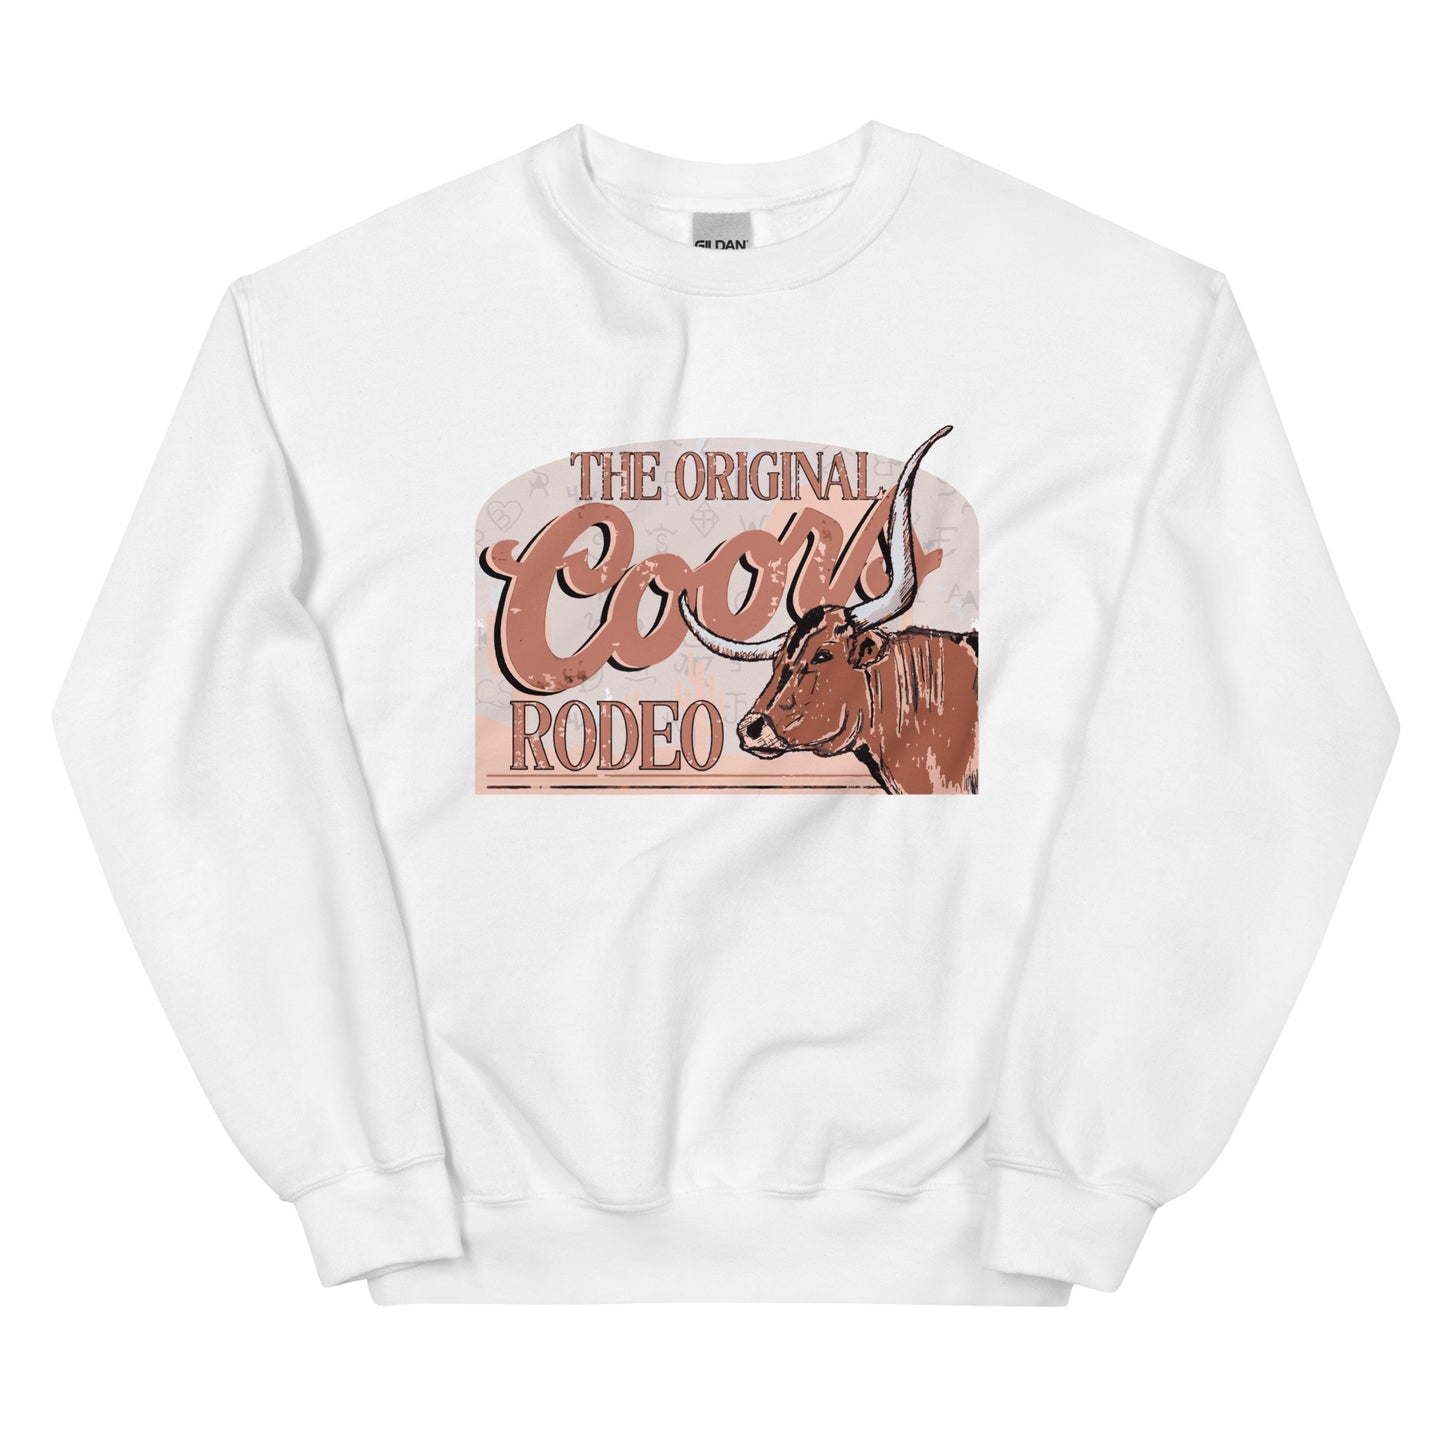 Coors Rodeo Sweatshirt